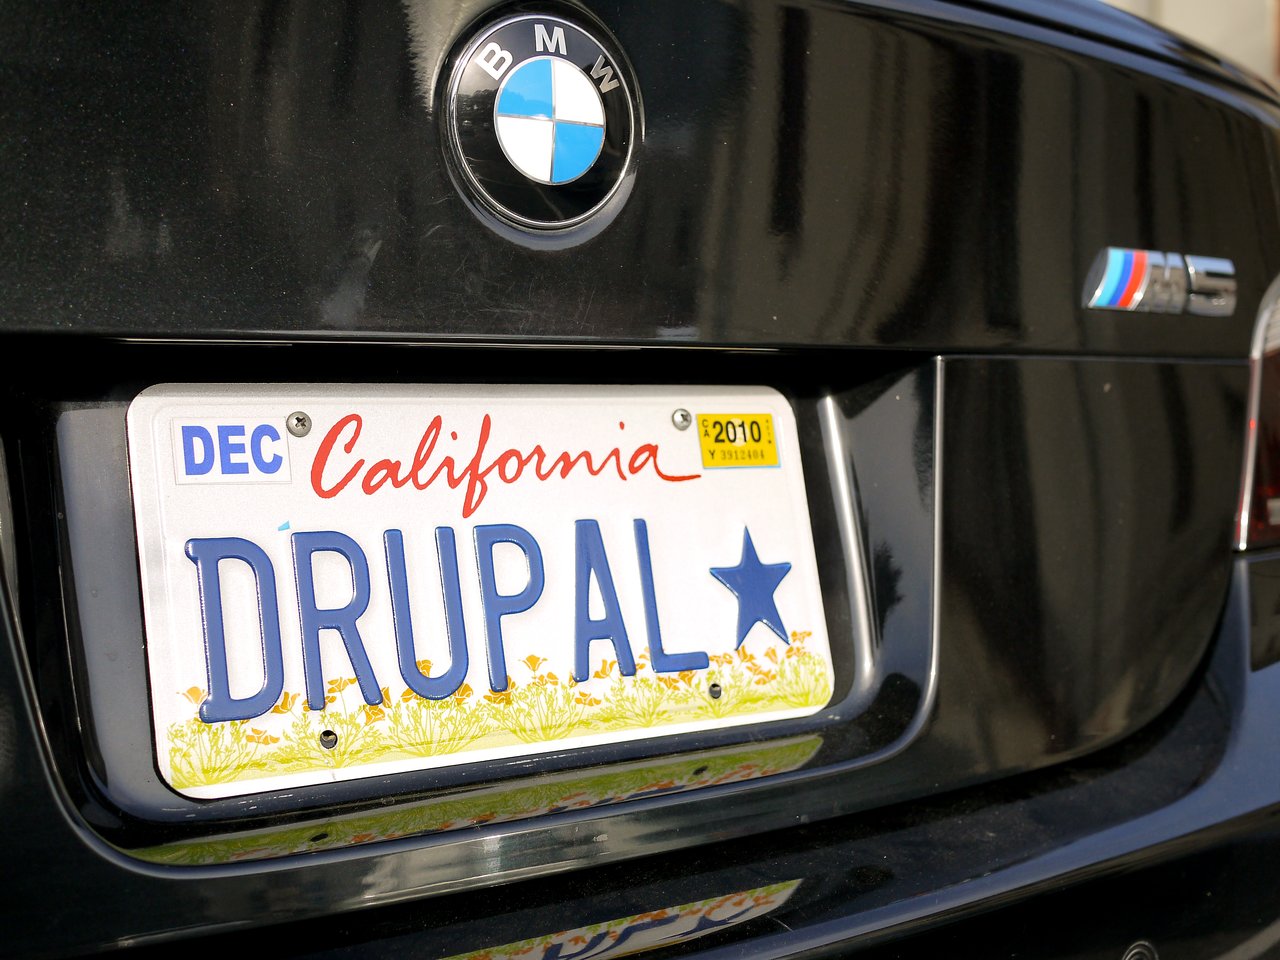 Drupal license plate